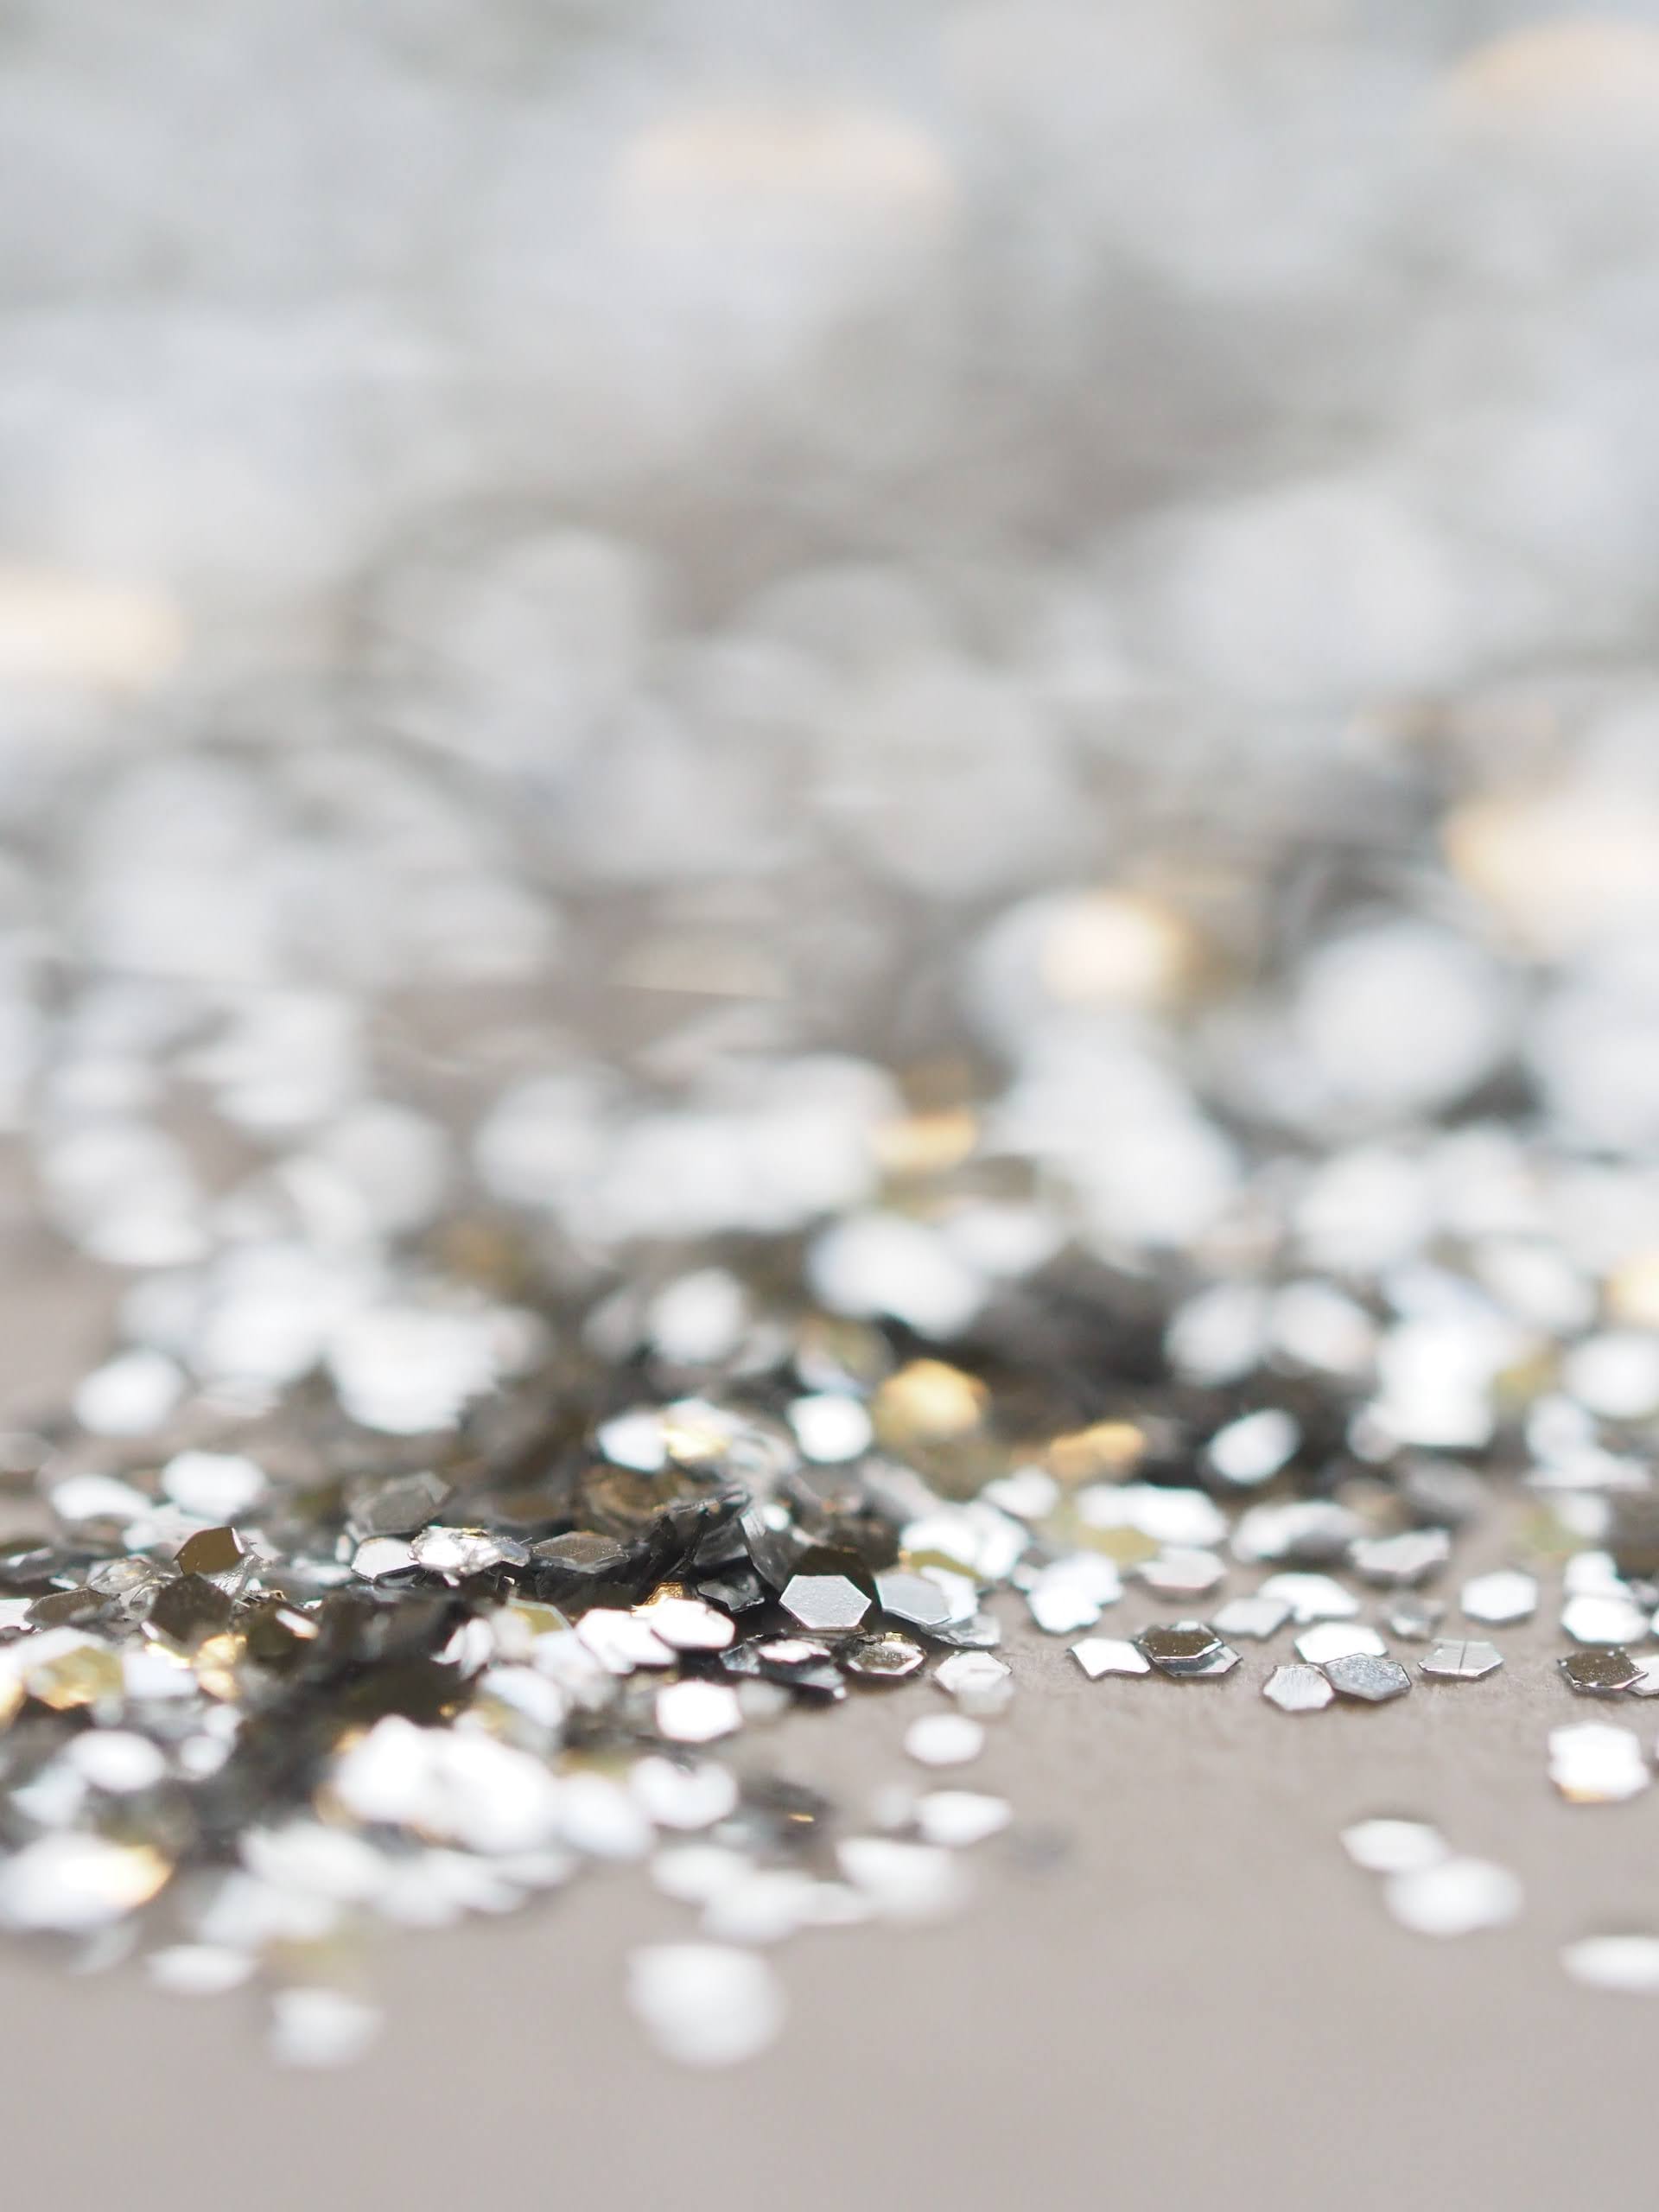 Silver Glitter | Photo by Jess Bailey via Unsplash